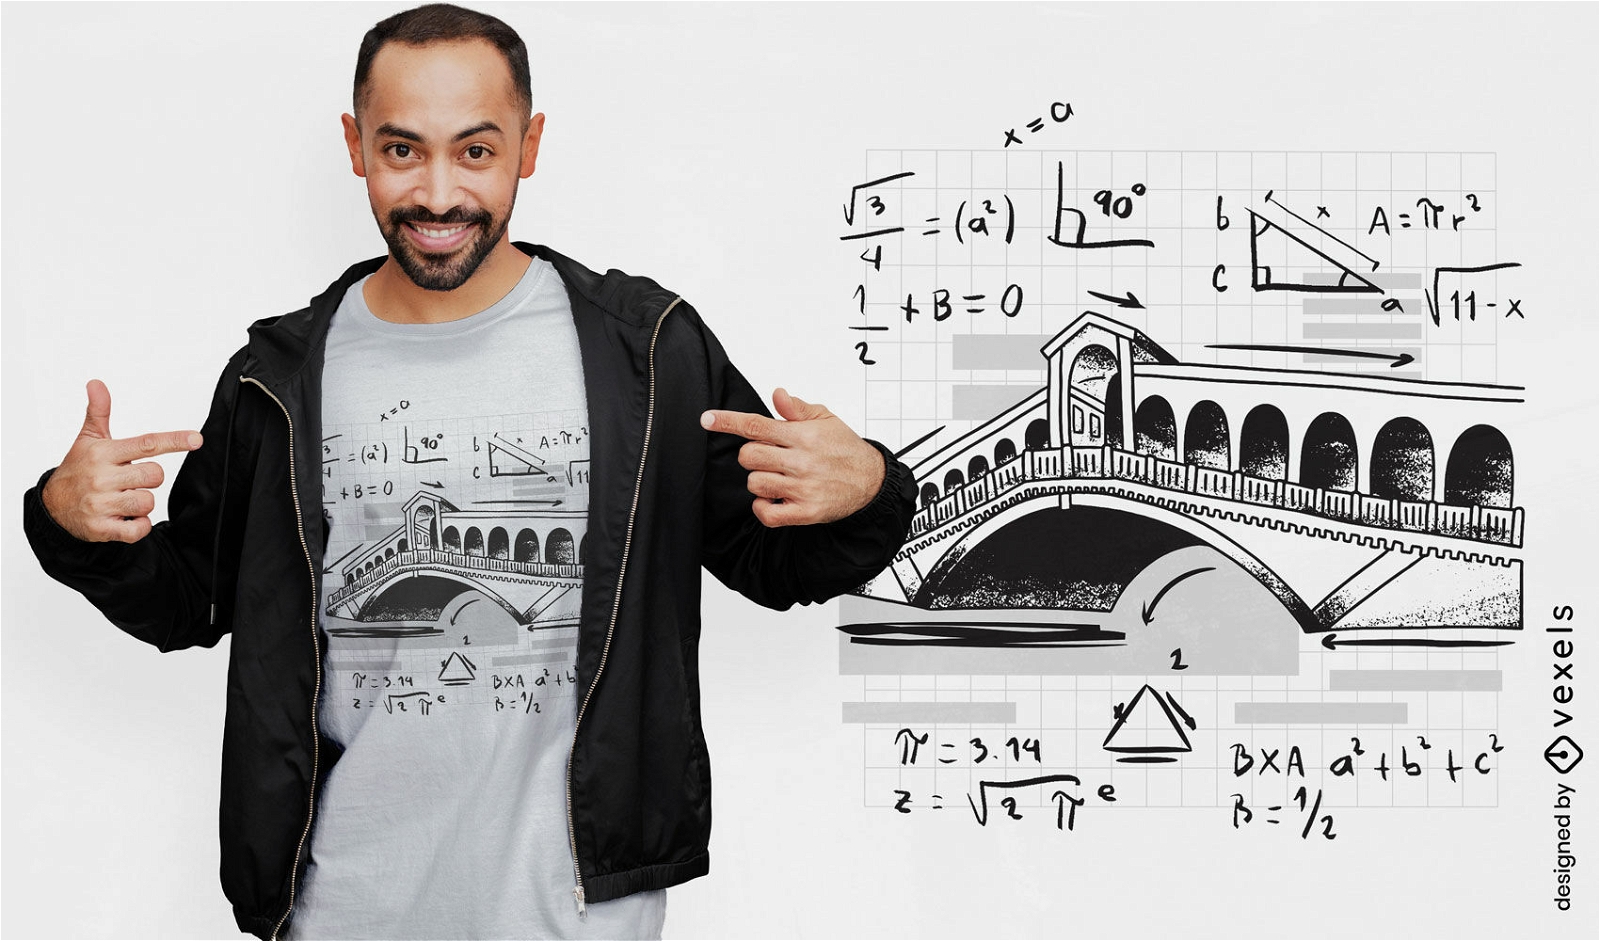 Br?cke mit T-Shirt-Design f?r mathematische Gleichungen